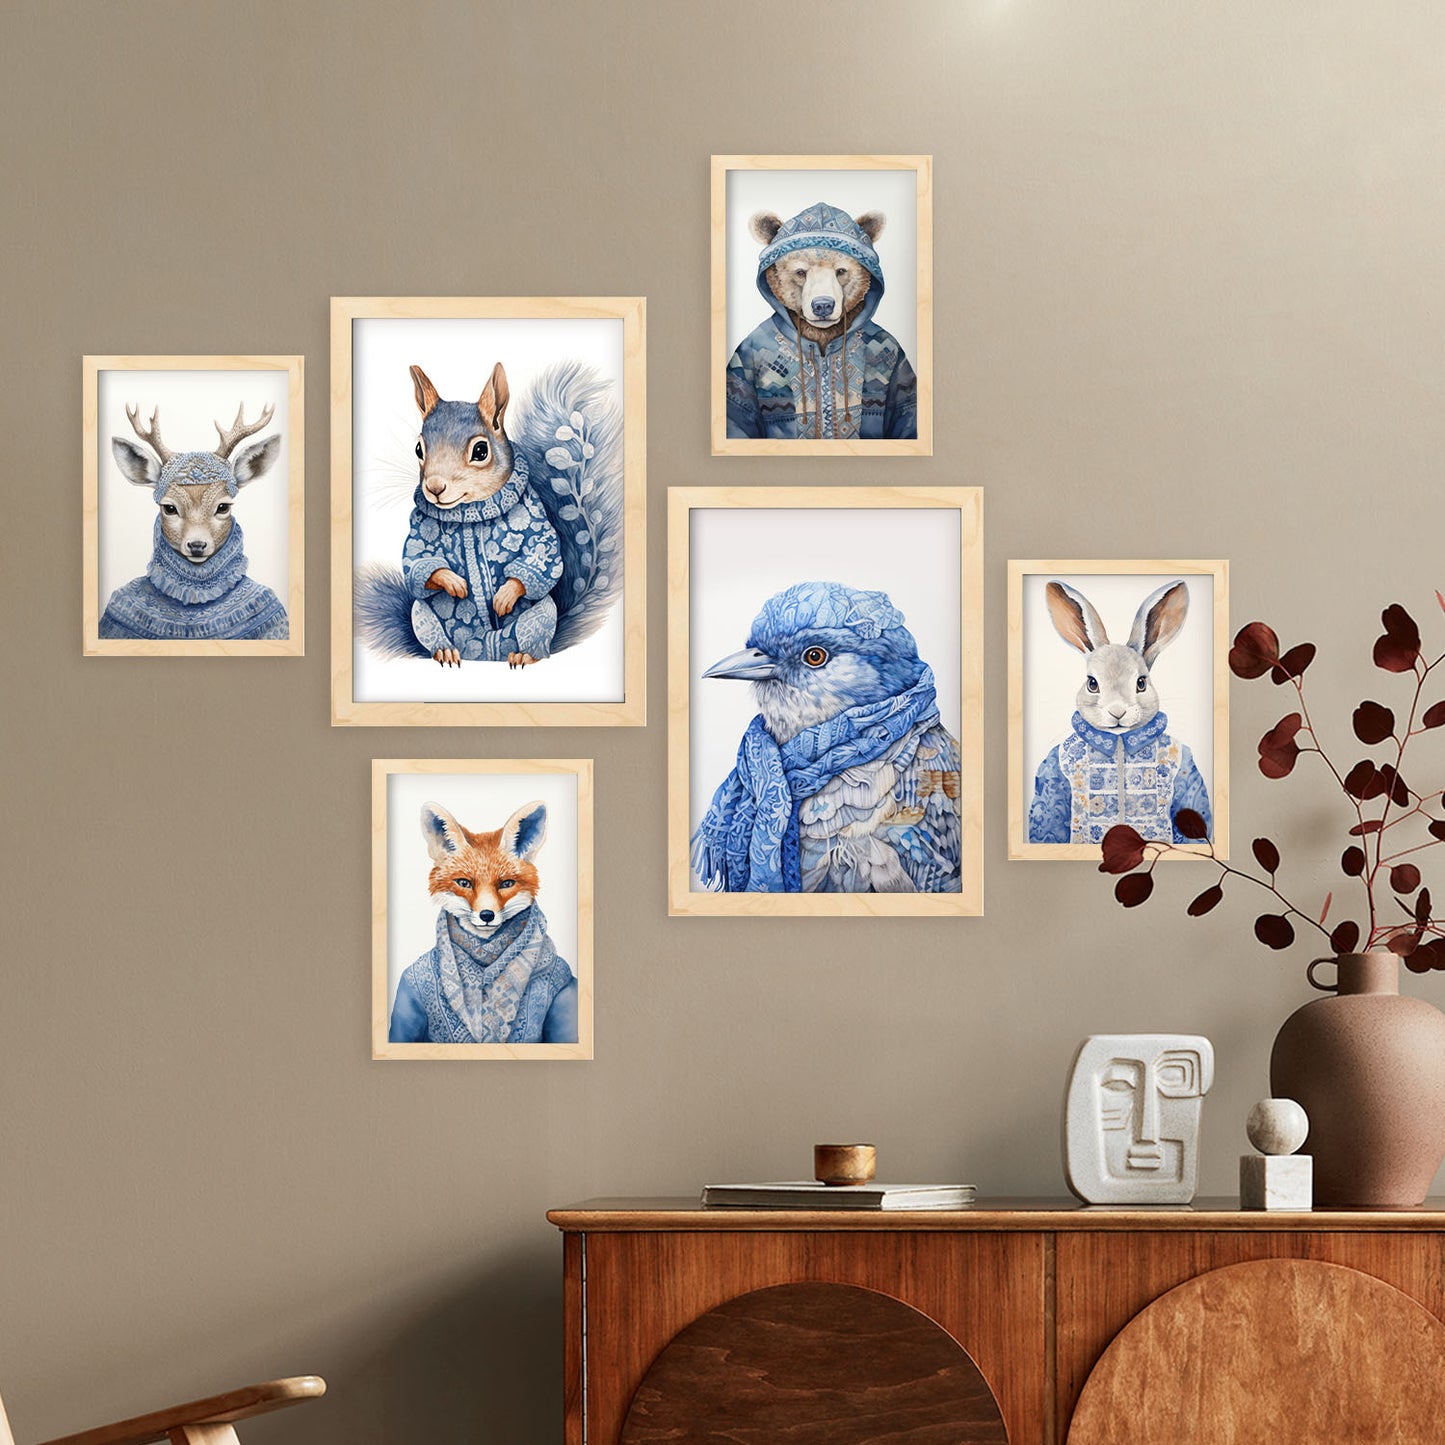 Nacnic Set de 6 Animales en ropa de invierno Posters. En Huellas de guardería. Estampados decorativos estéticos para su sala de estar, dormitorio, hogar Tamaños A4 y A3